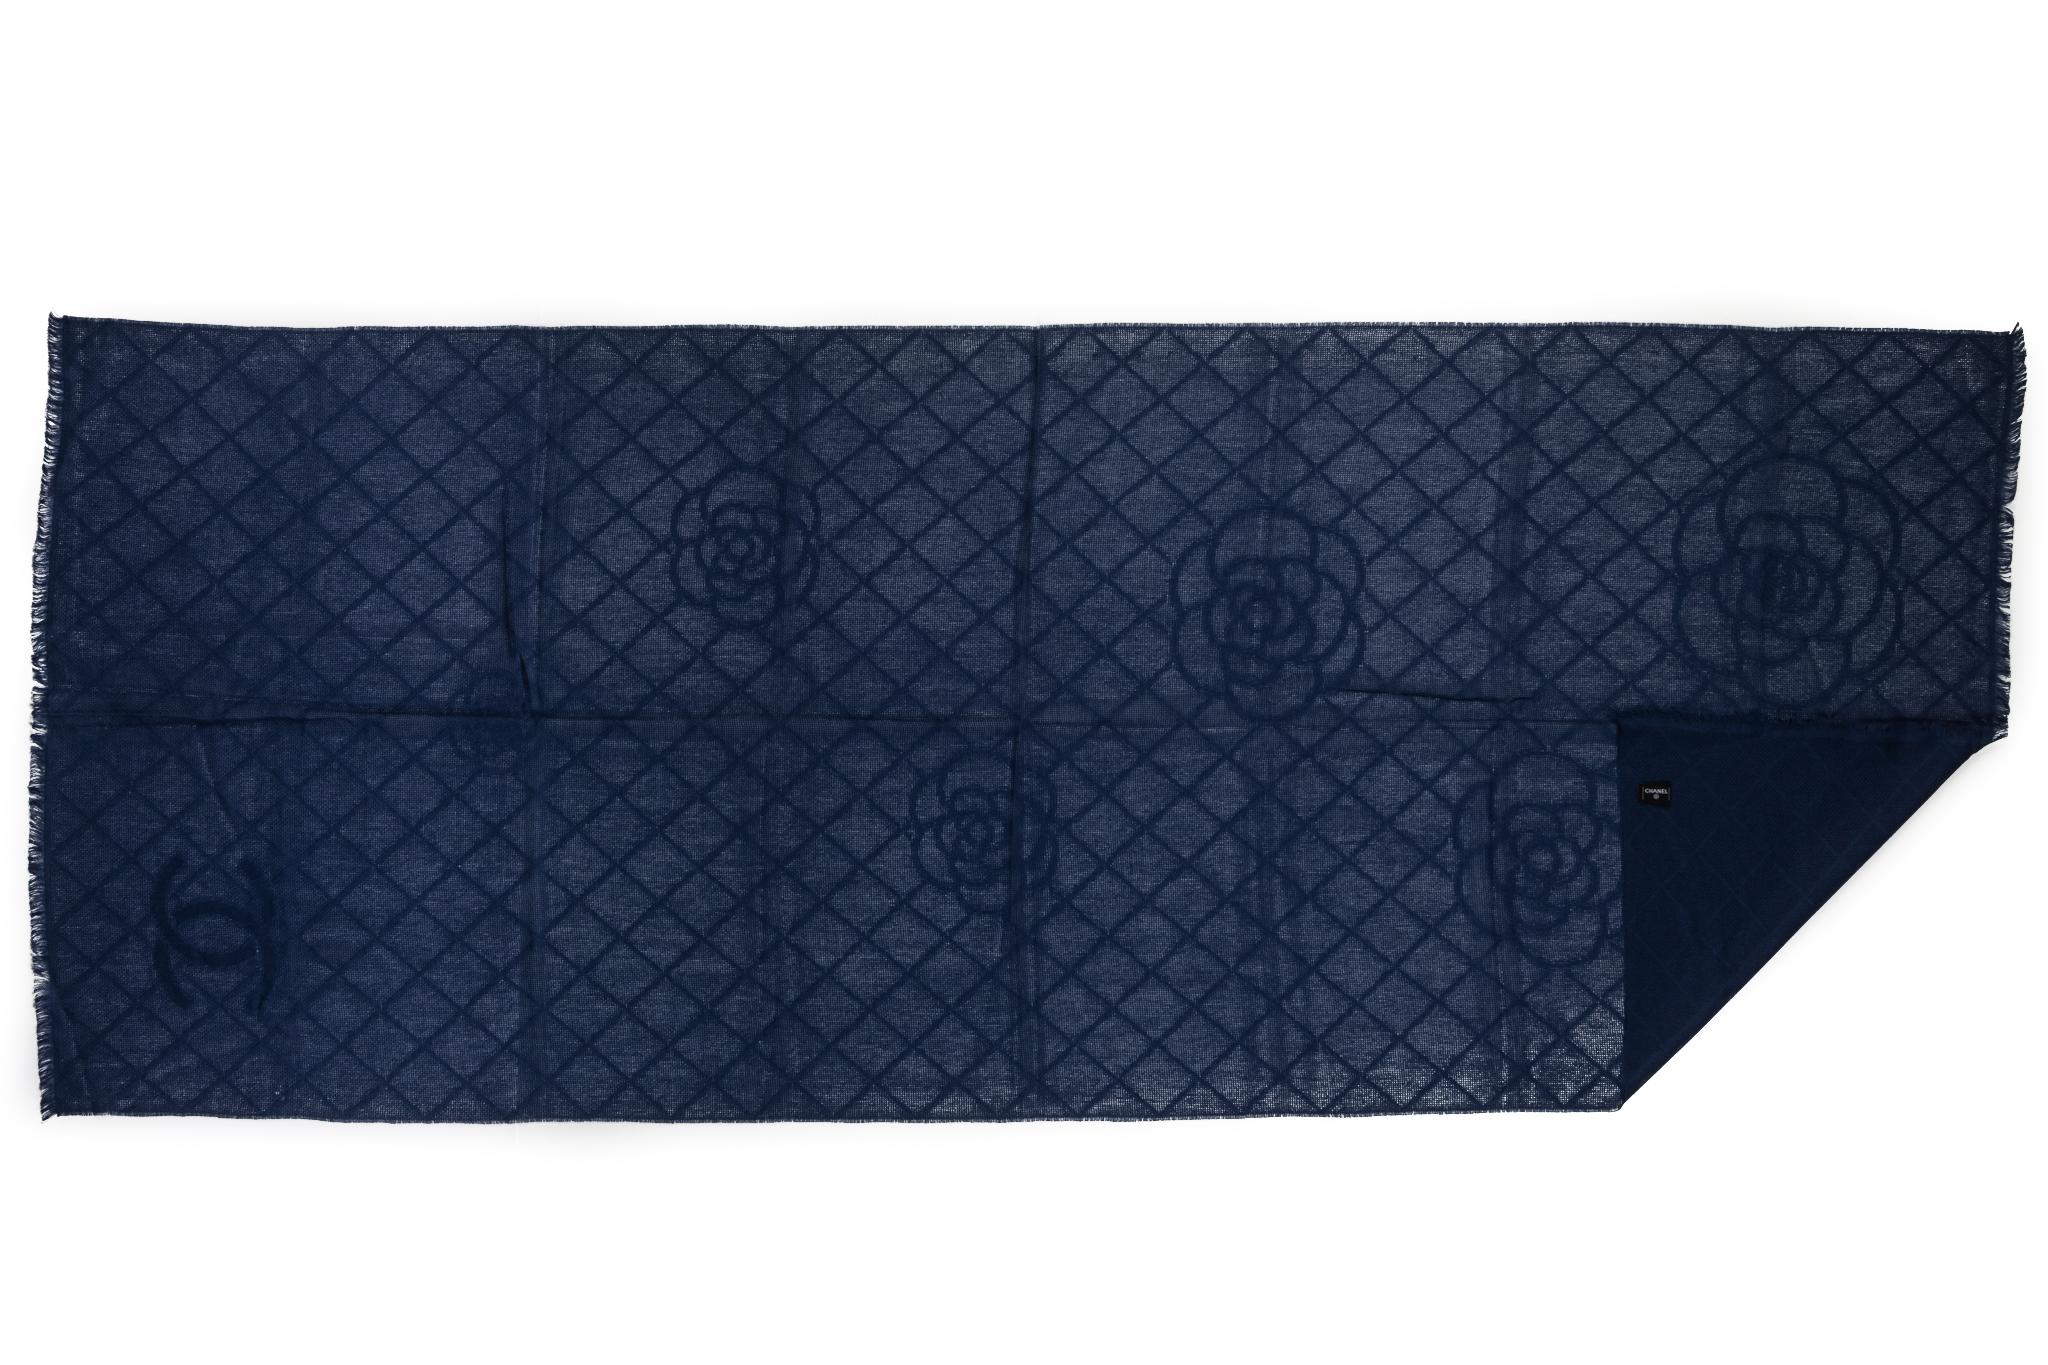 Châle Chanel neuf en cachemire et camélia bleu marine avec logo. Étiquette d'entretien.